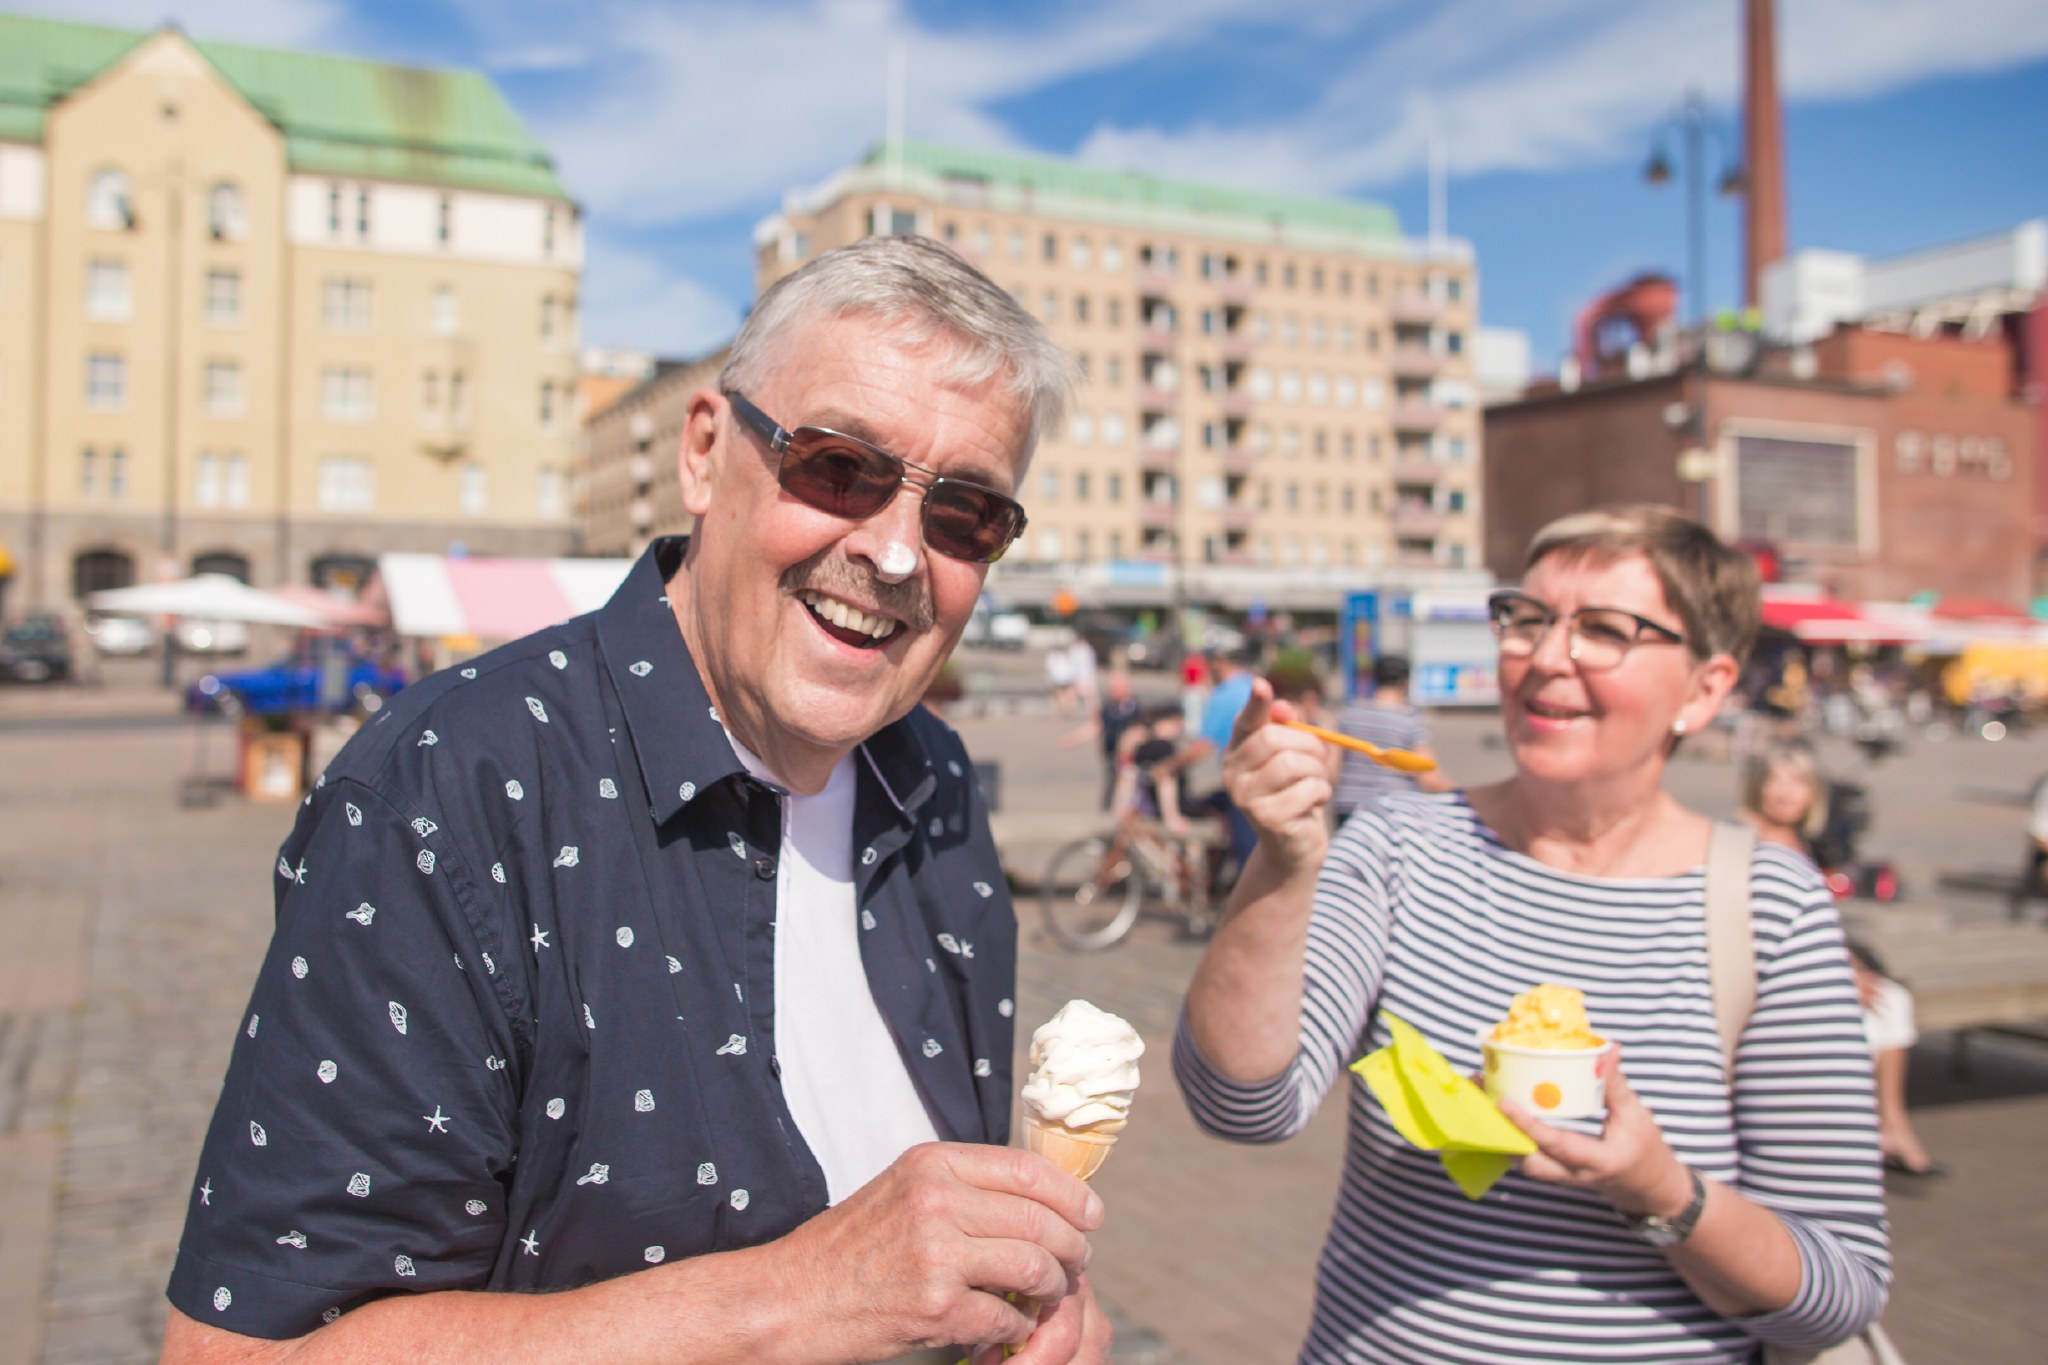 Mies ja nainen syömässä jäätelöä Laukontorilla.